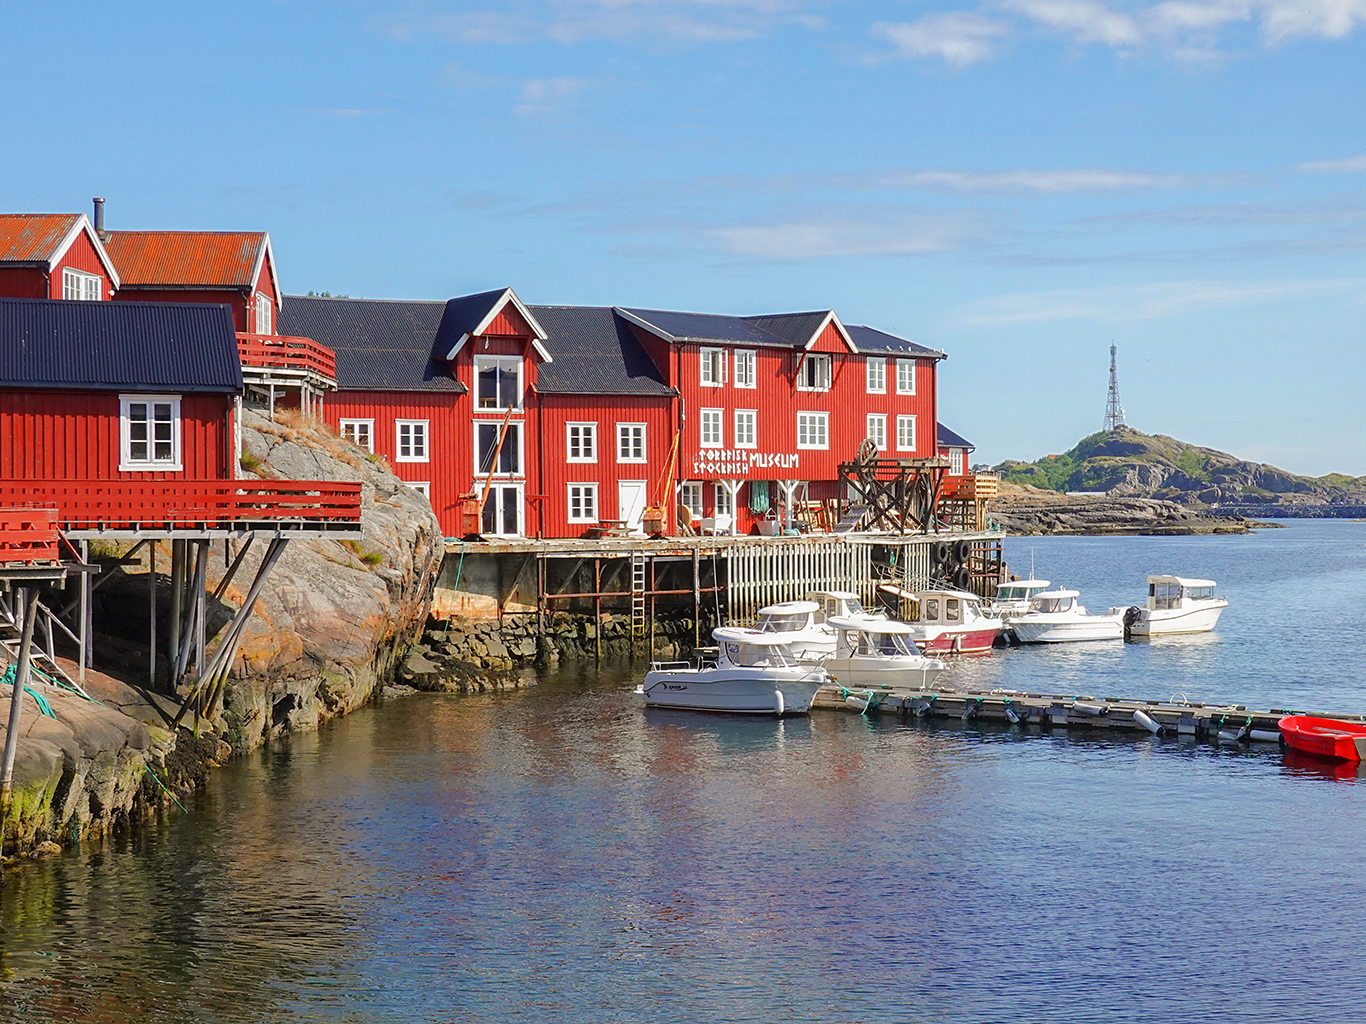 Muzeum tresek čili tørrfisk v rybářské vesnici Å na ostrově Moskenesøy